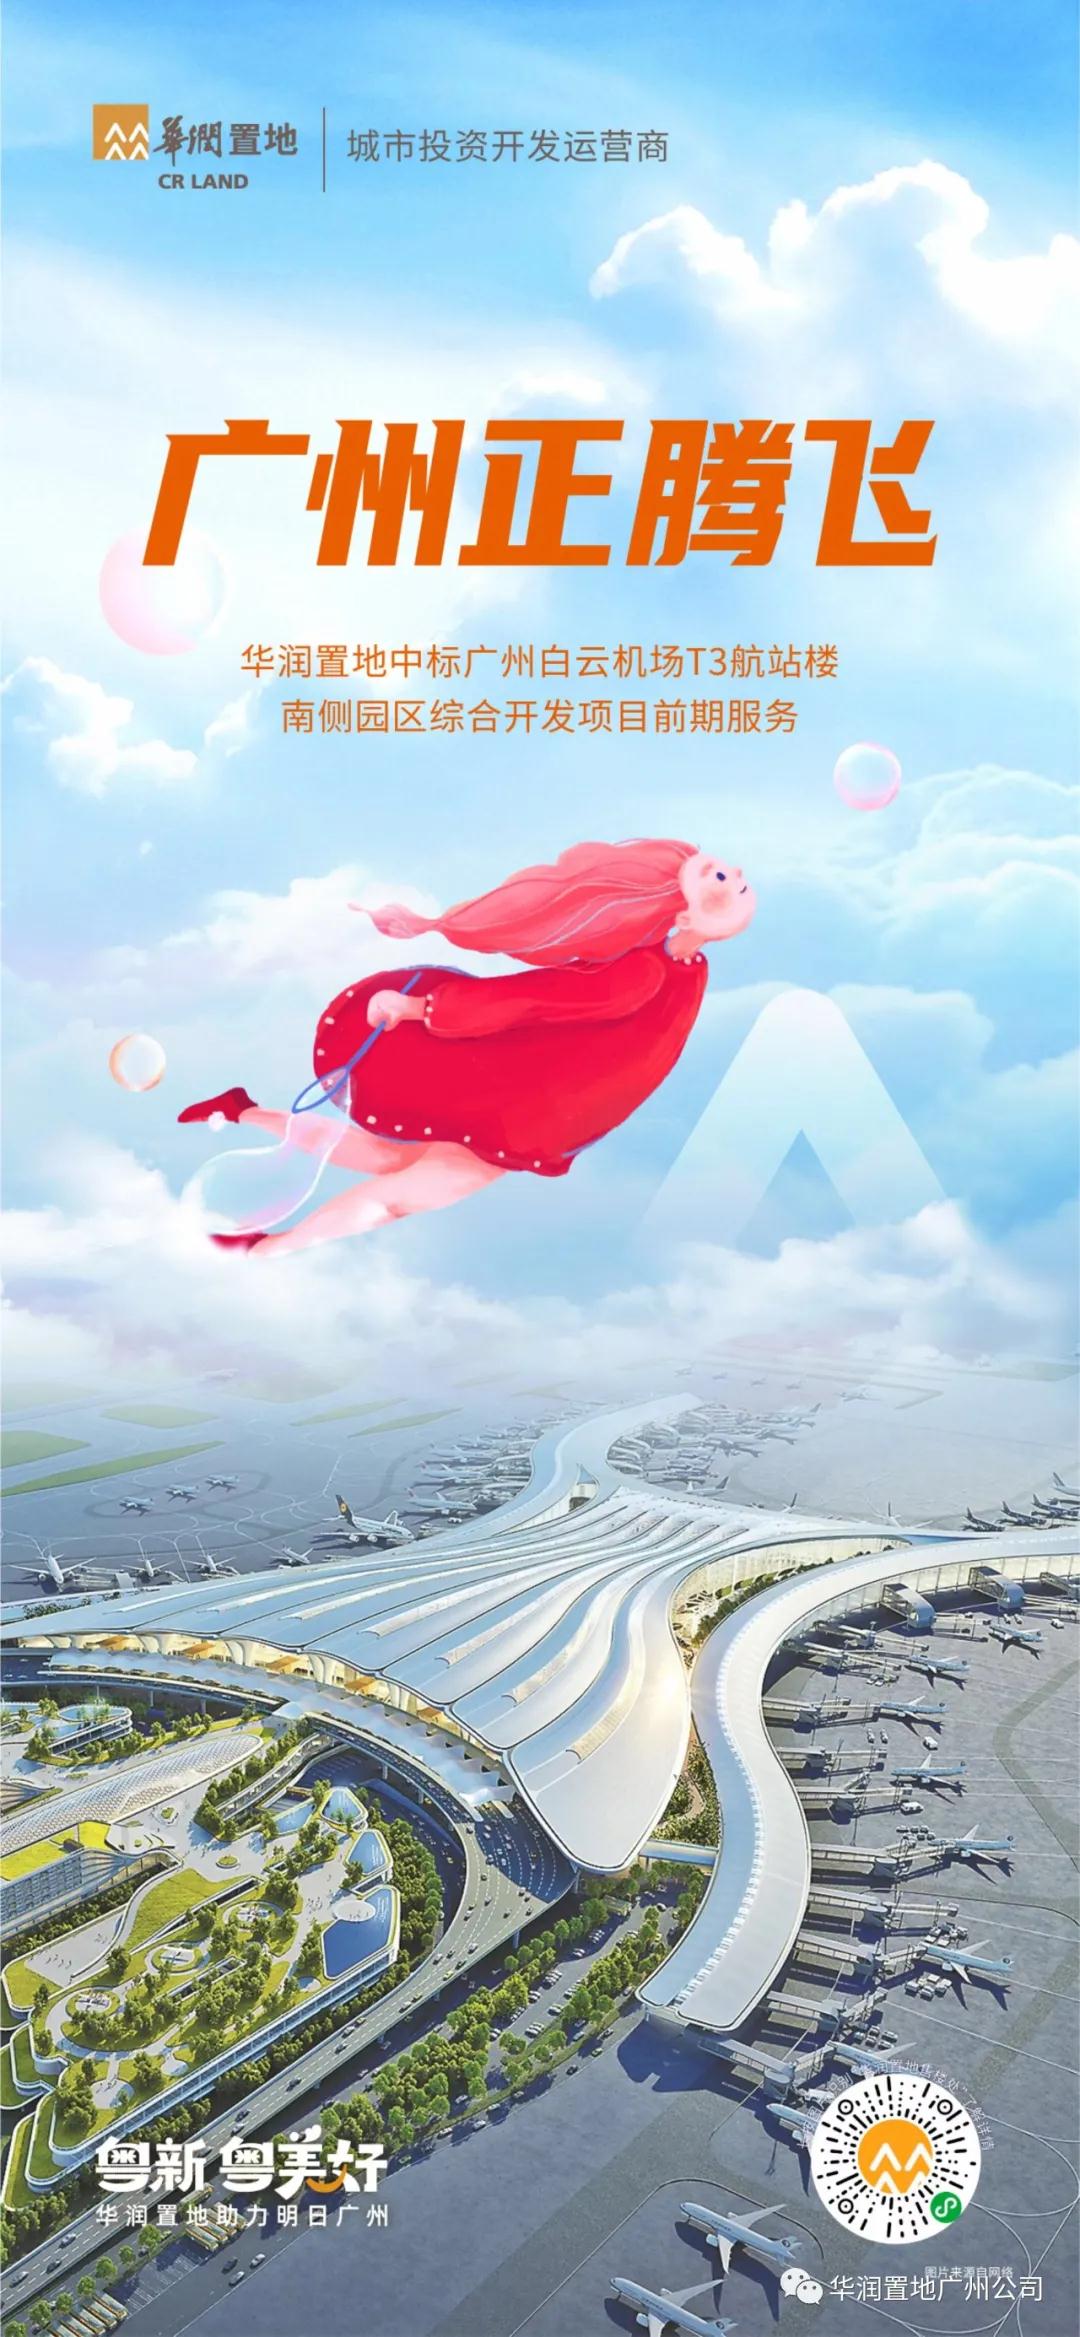 广州白云机场迎来新综合开发项目 华润置地中标项目前期服务